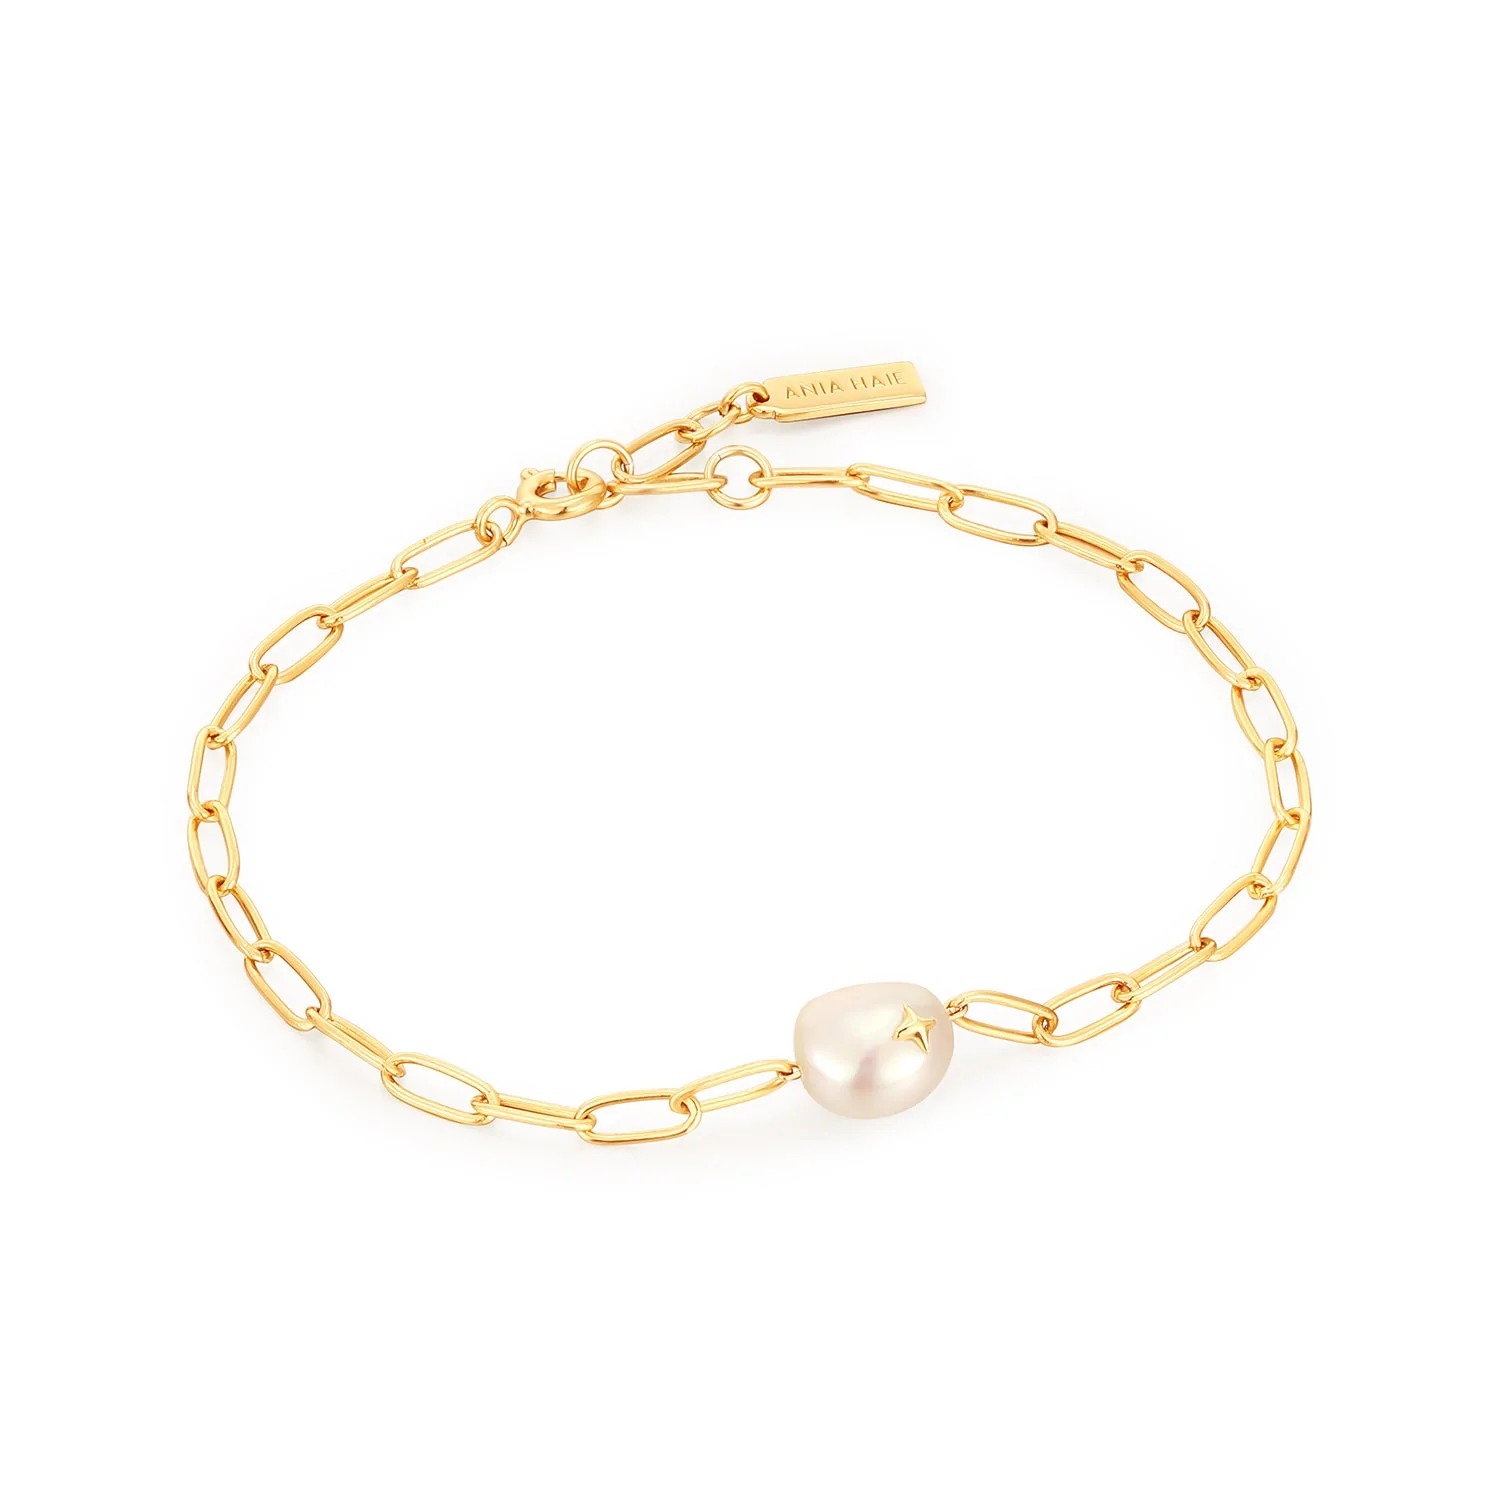 ANIA HAIE Pearl Sparkle Chunky Chain Bracelet, Gold-plate